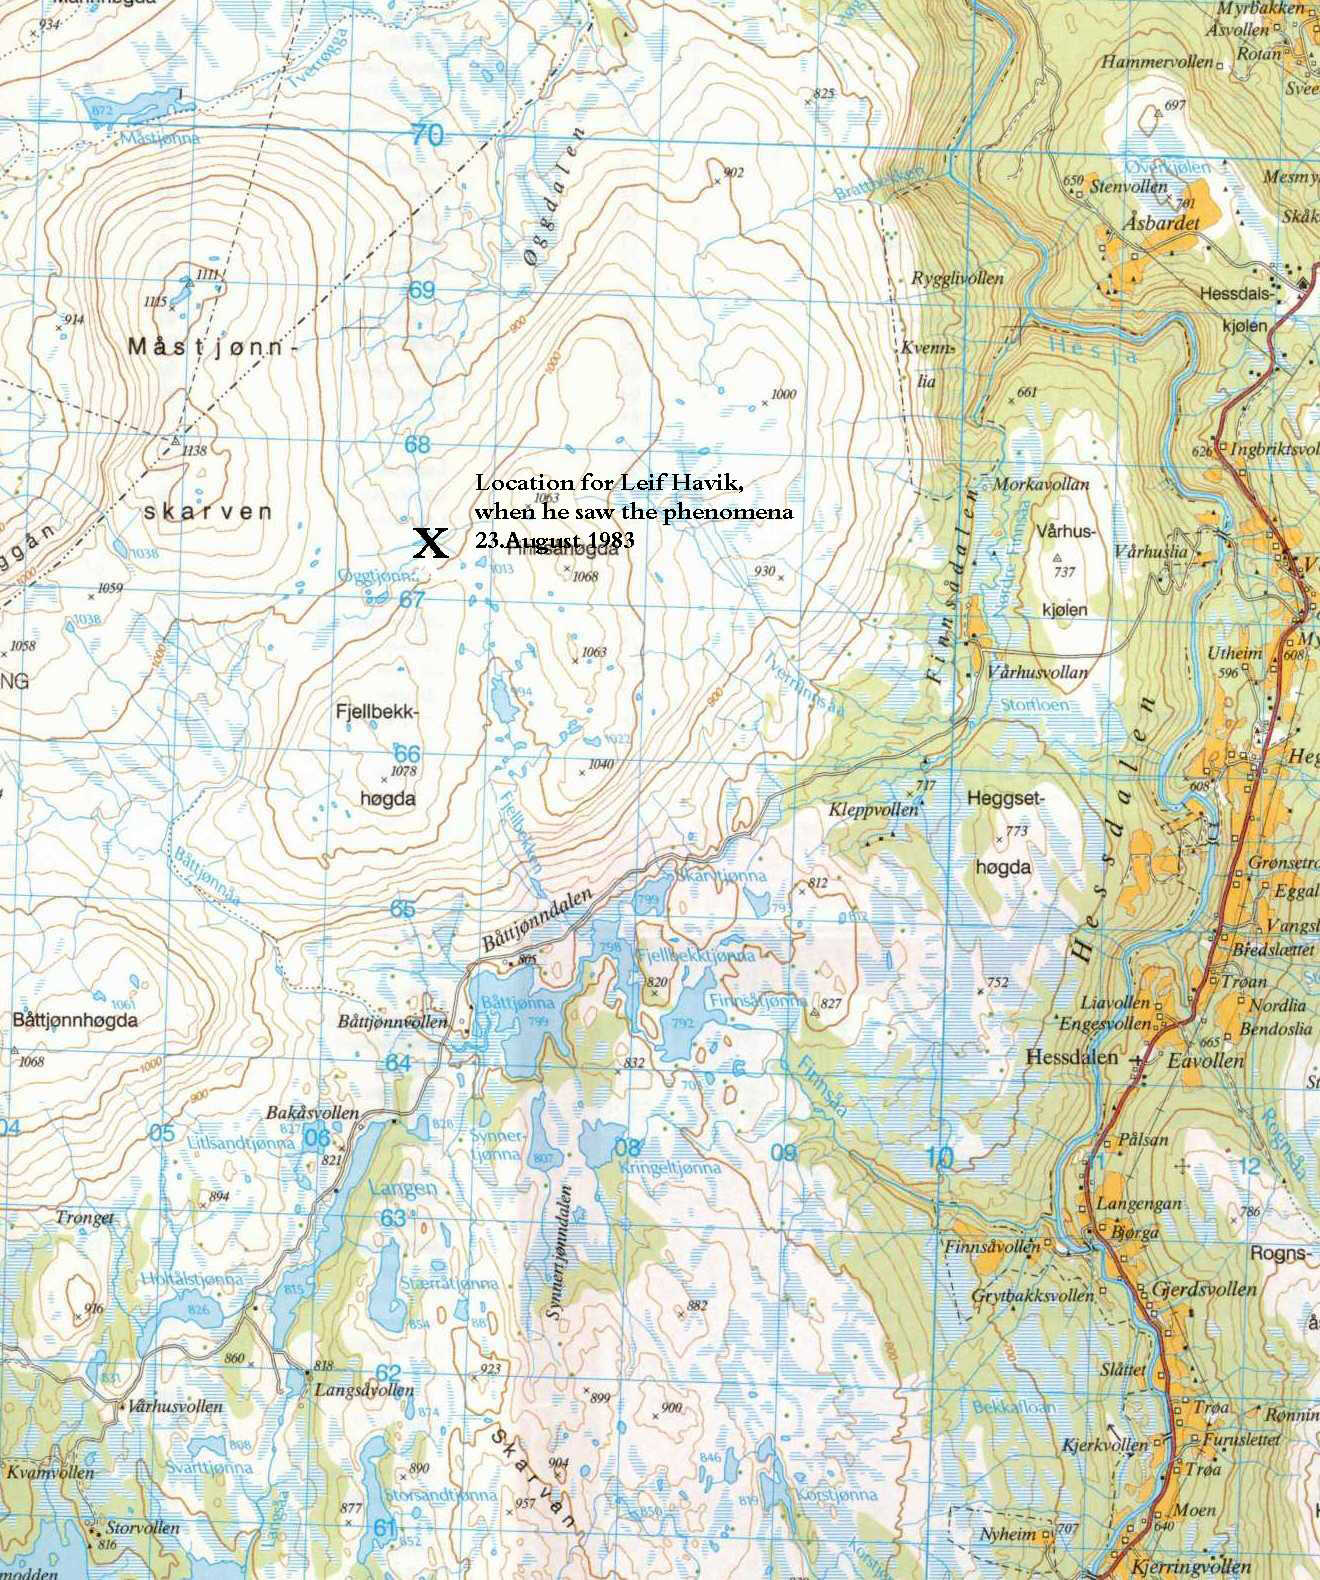 Kart som viser hvor Leif Havik var da han gjorde observasjonen den 23 August 1983